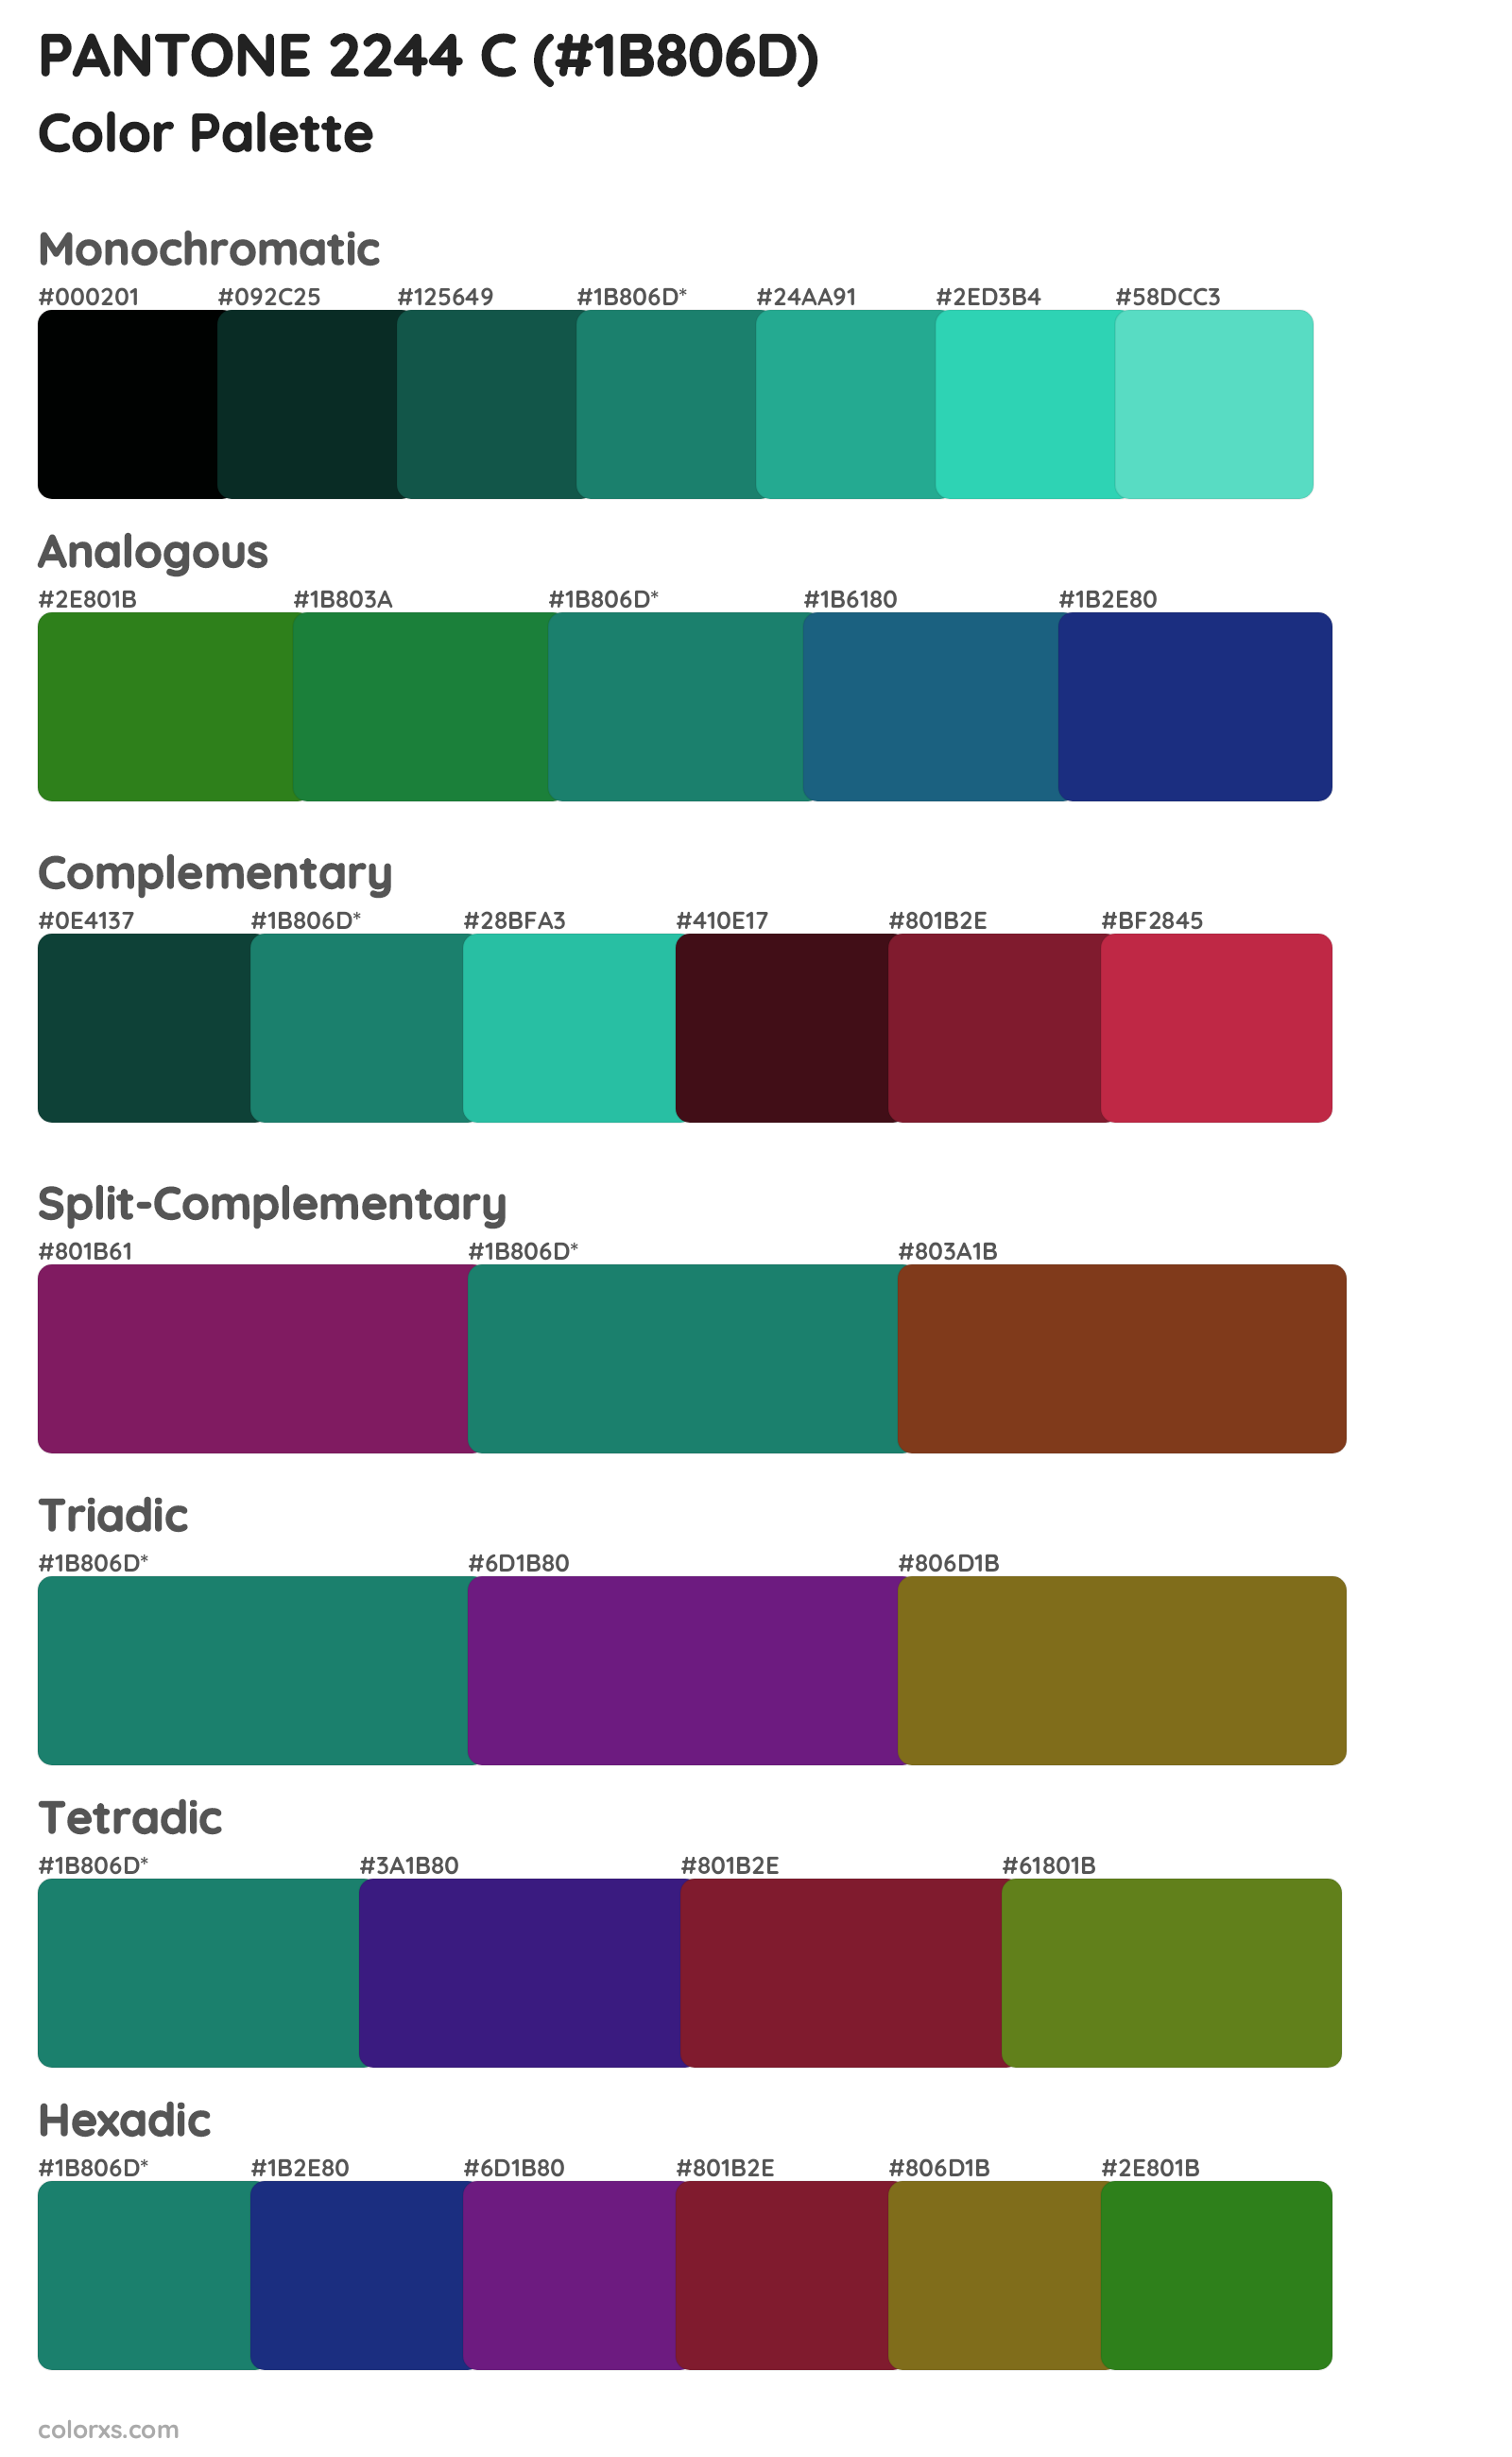 PANTONE 2244 C Color Scheme Palettes